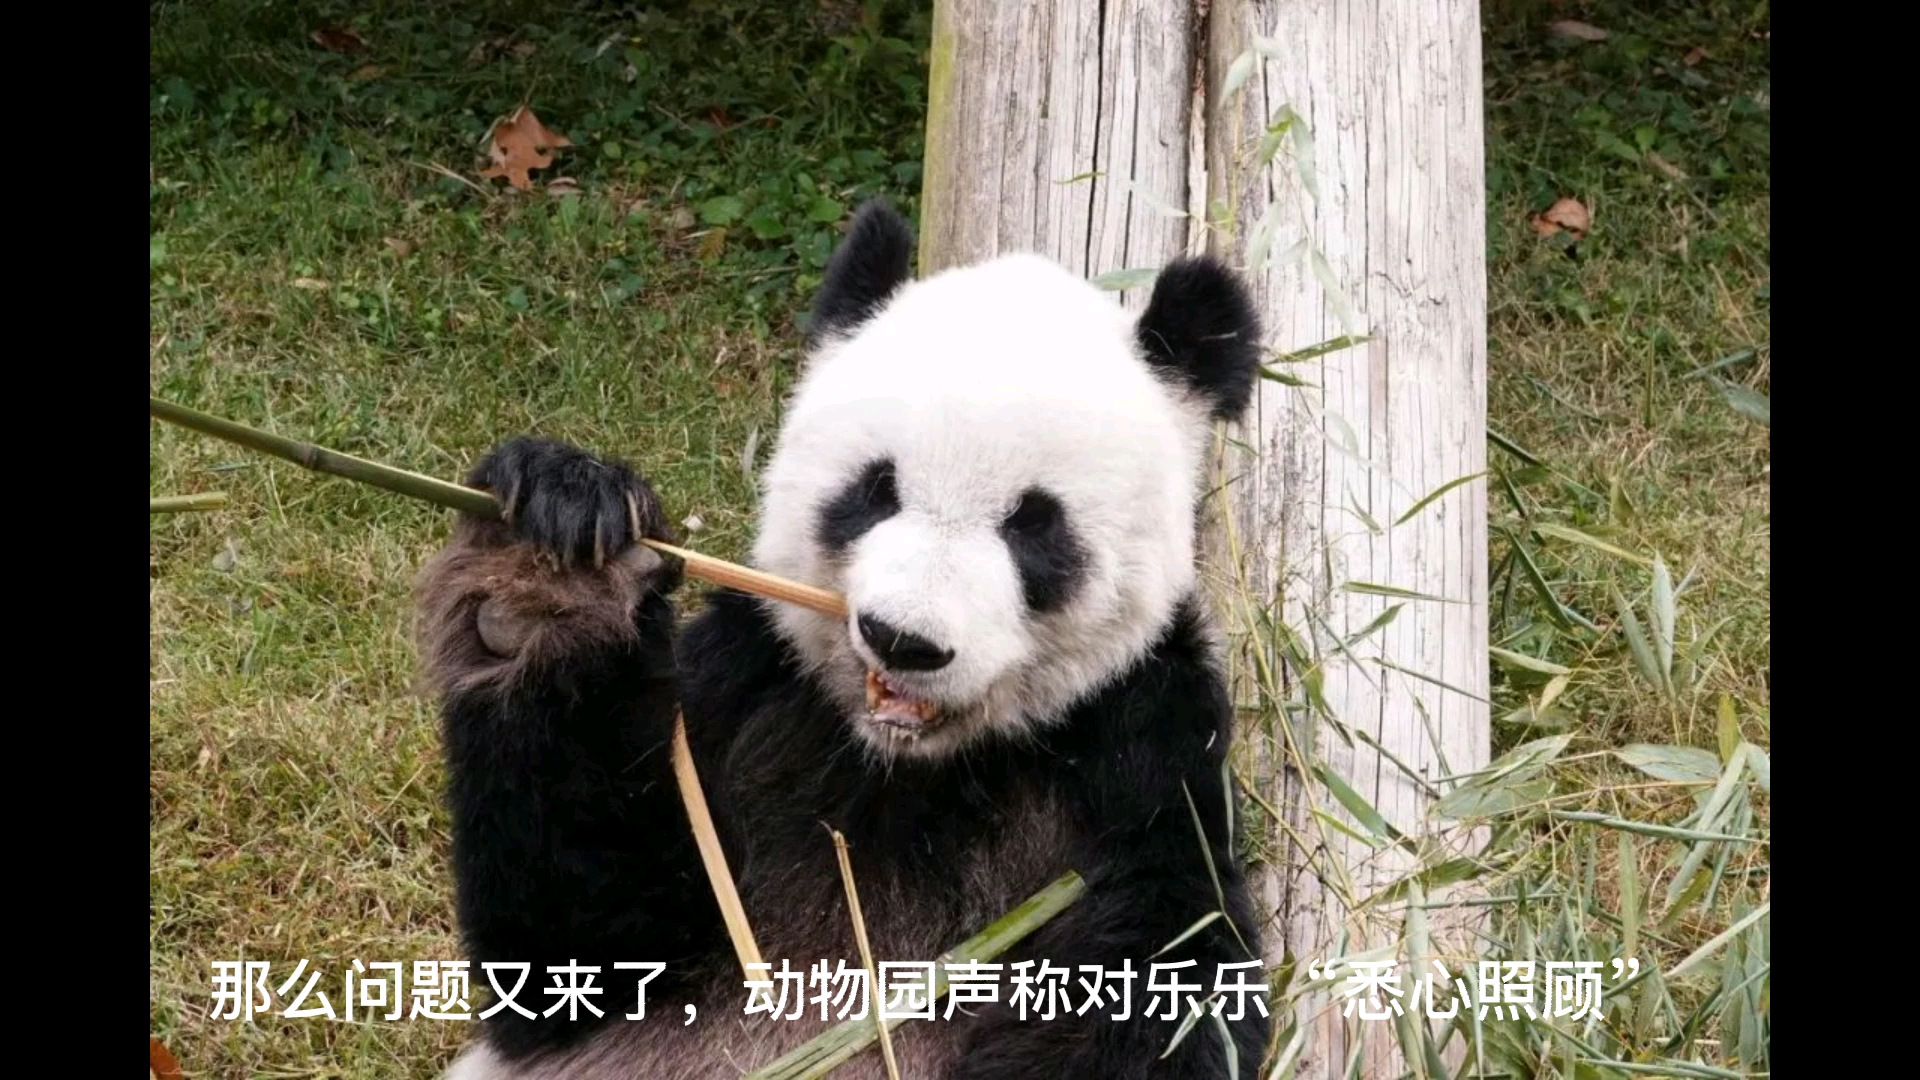 旅美大熊猫乐乐非正常死亡，疑点重重！